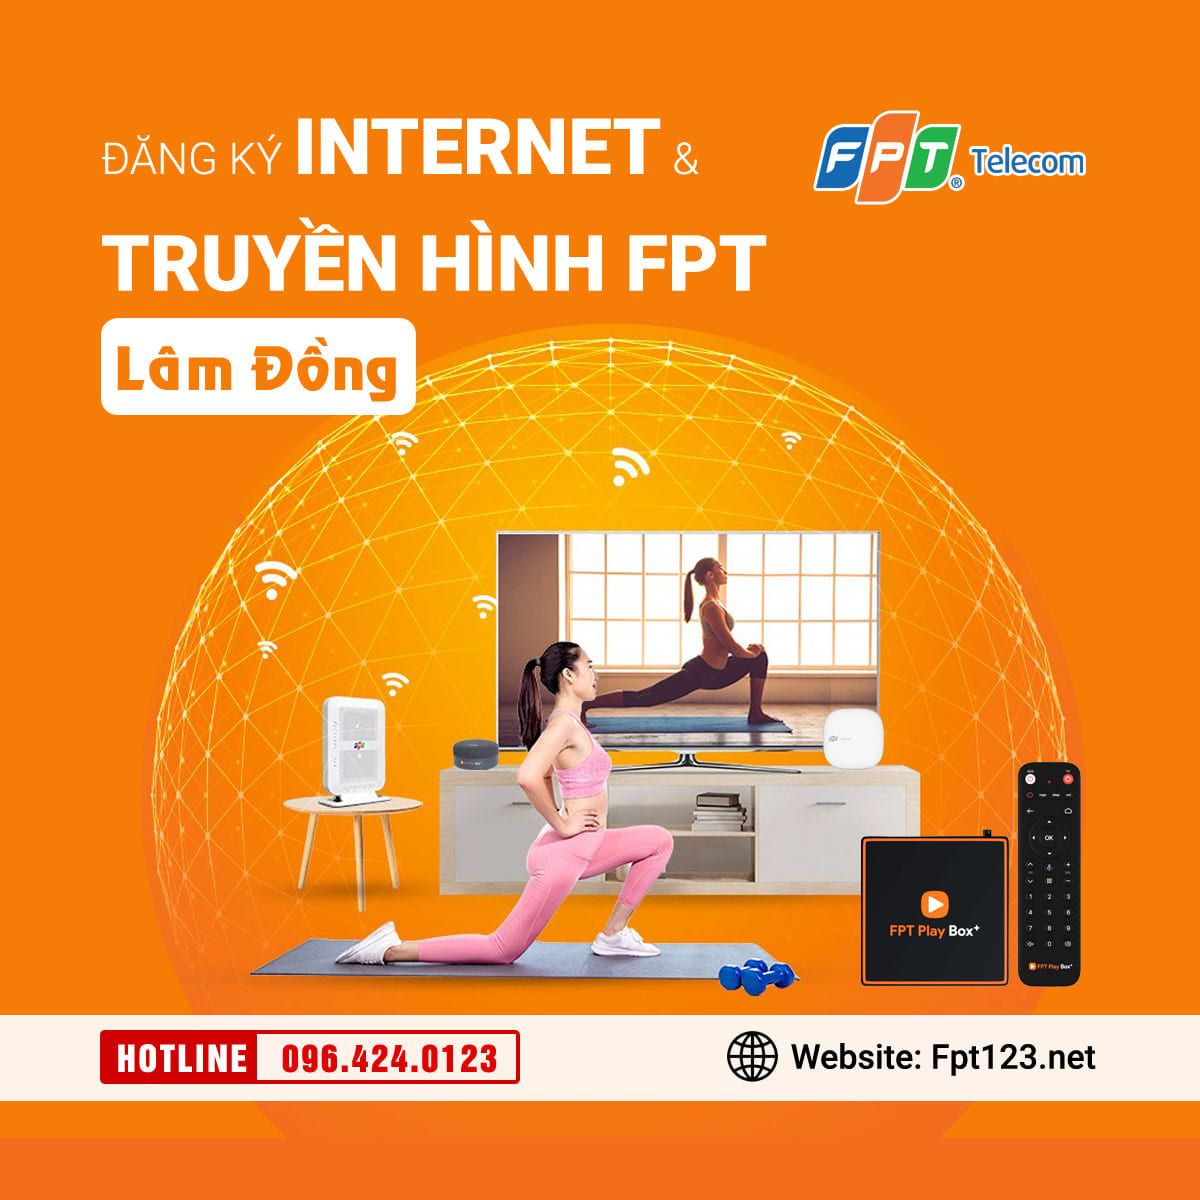 Đăng ký internet và truyền hình FPT Lâm Đồng